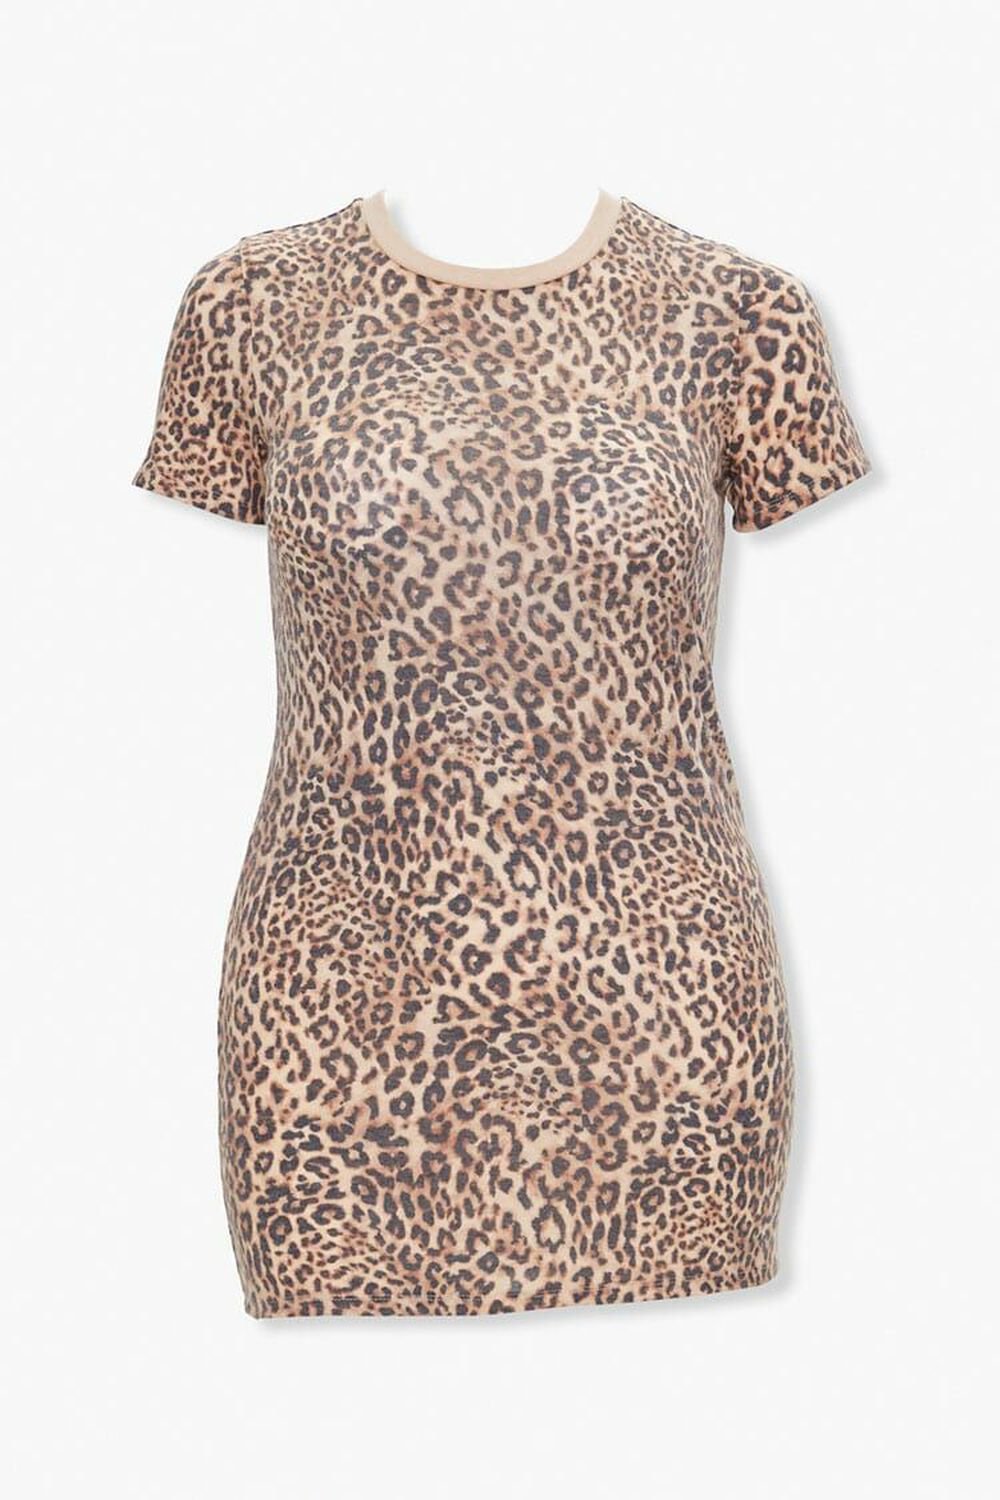 TAN/BLACK Leopard Print T-Shirt Dress, image 1